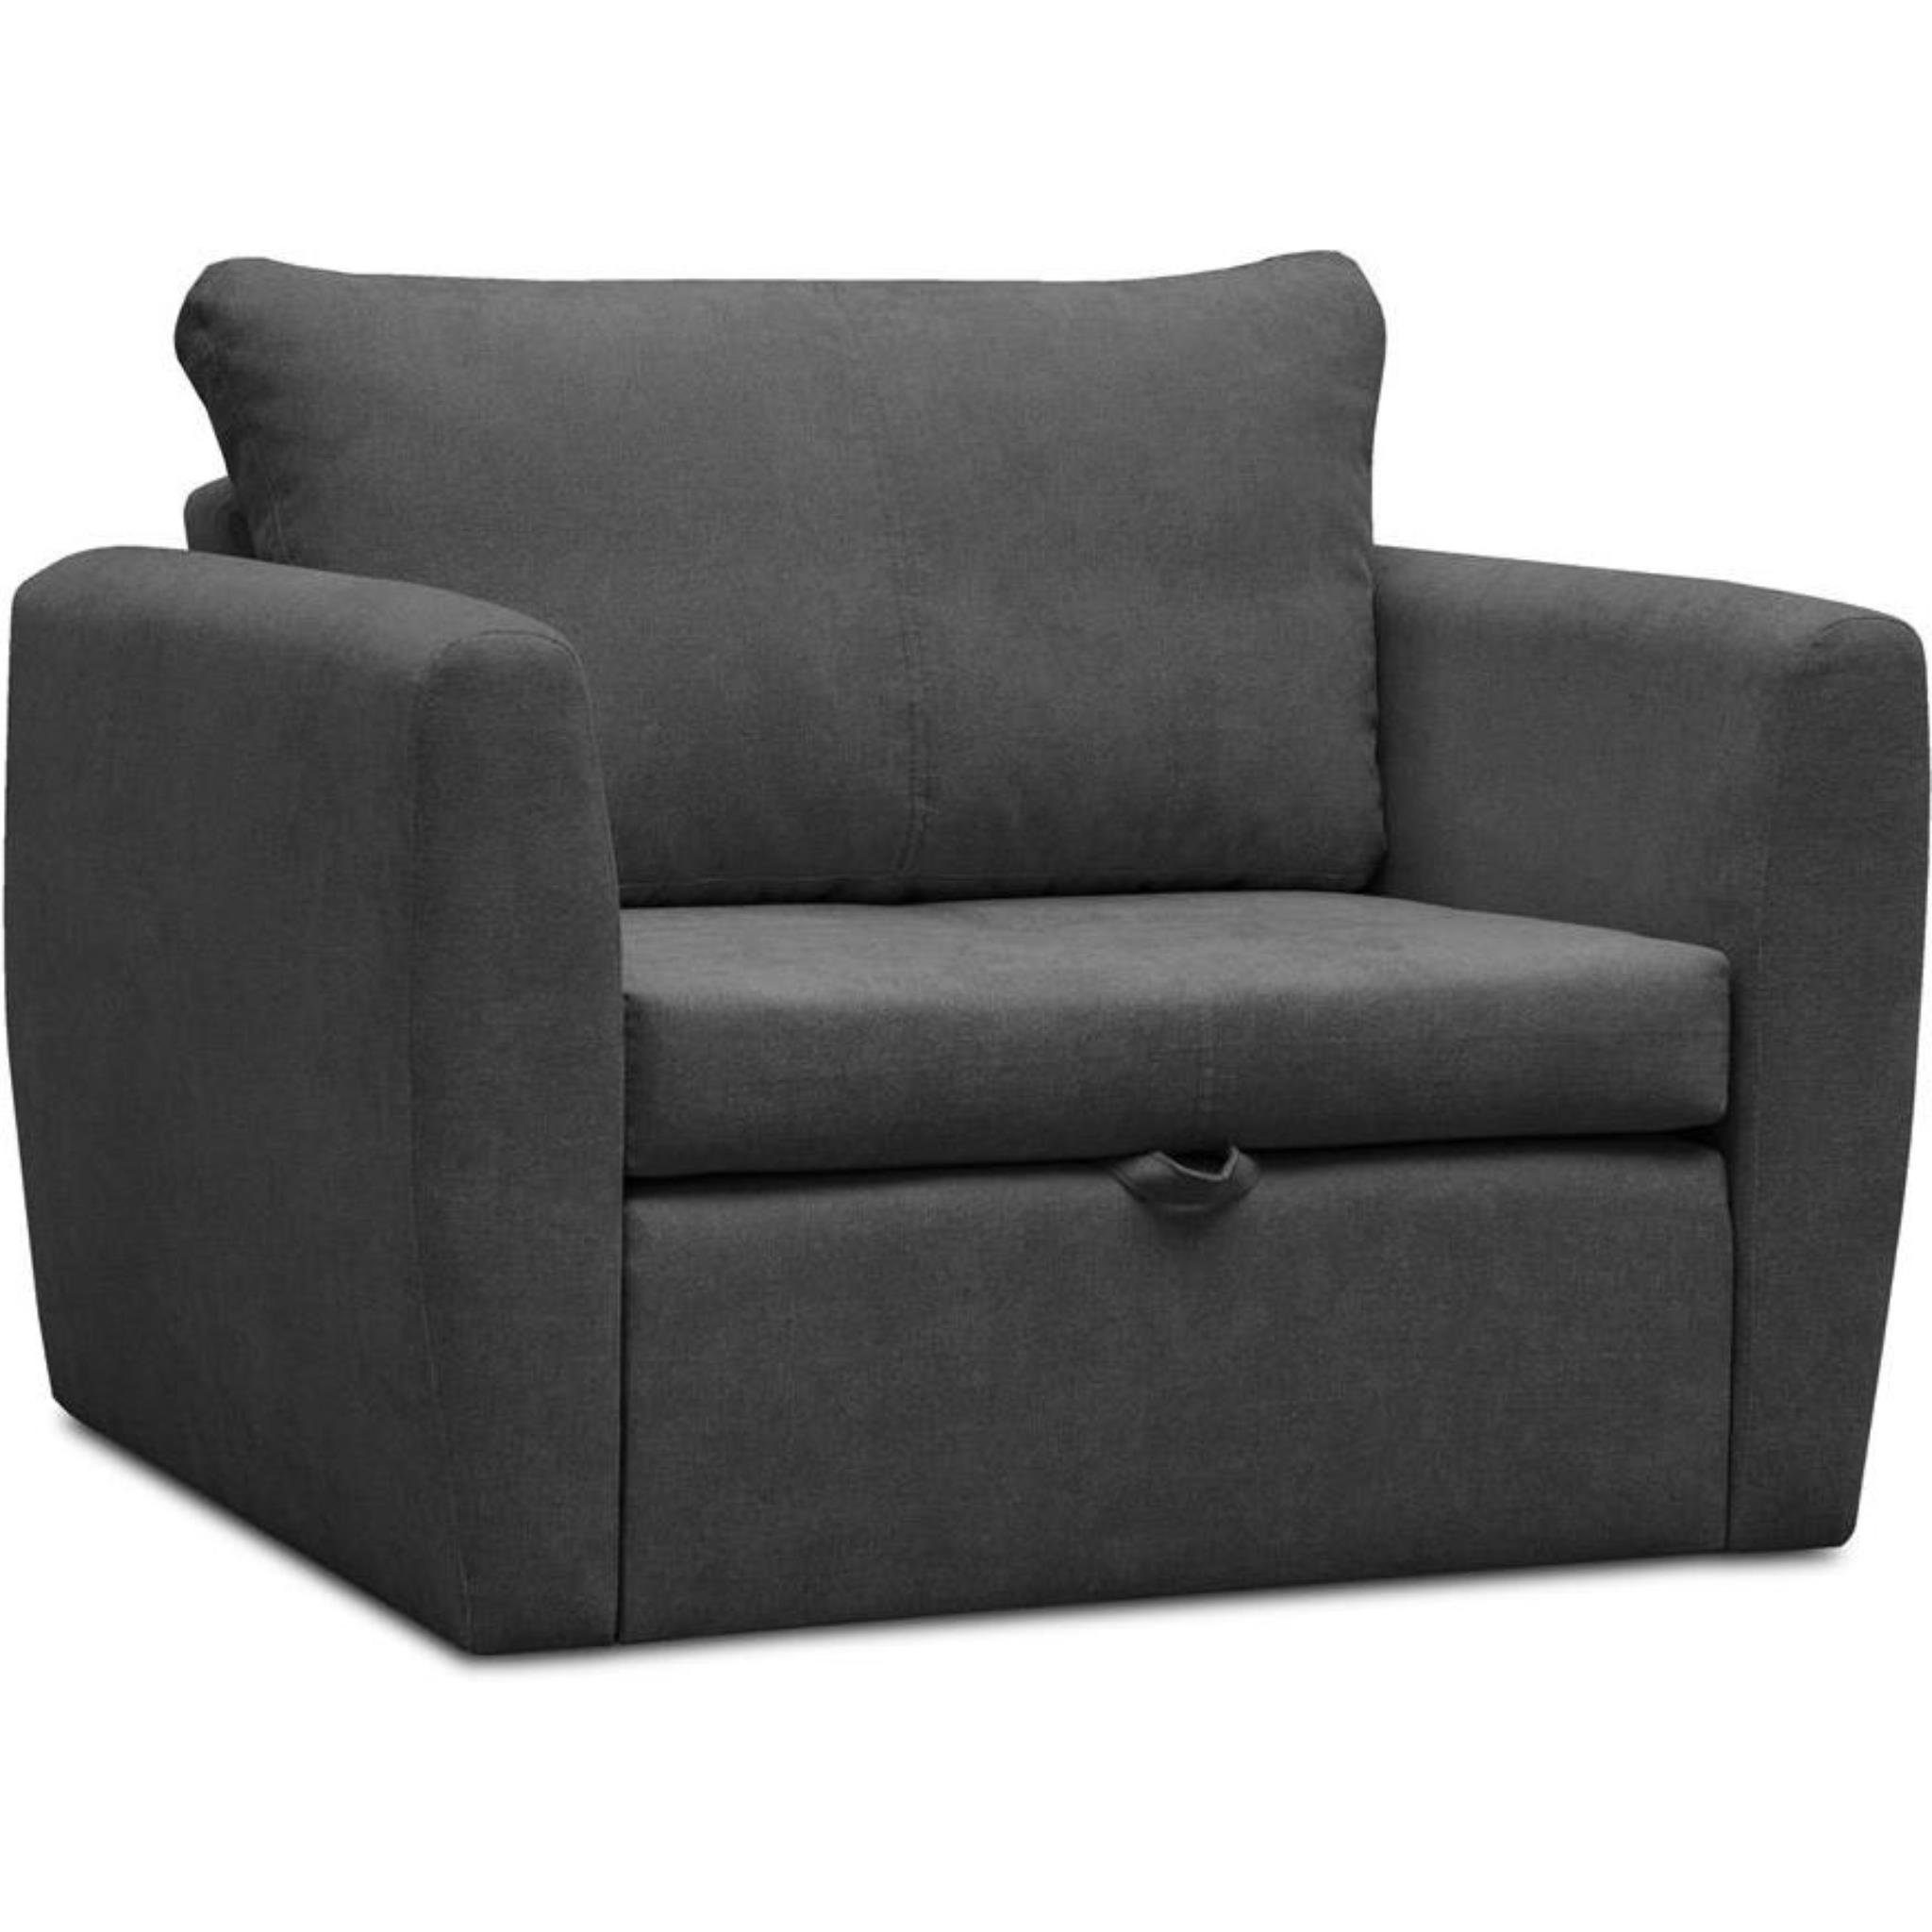 (Modern Sofa, Schlaffunktion, Kamel Schwarz 1-Sitzer (alfa Wohnzimmersessel), Polstersessel Bettkasten, Beautysofa 21) Relaxsessel mit